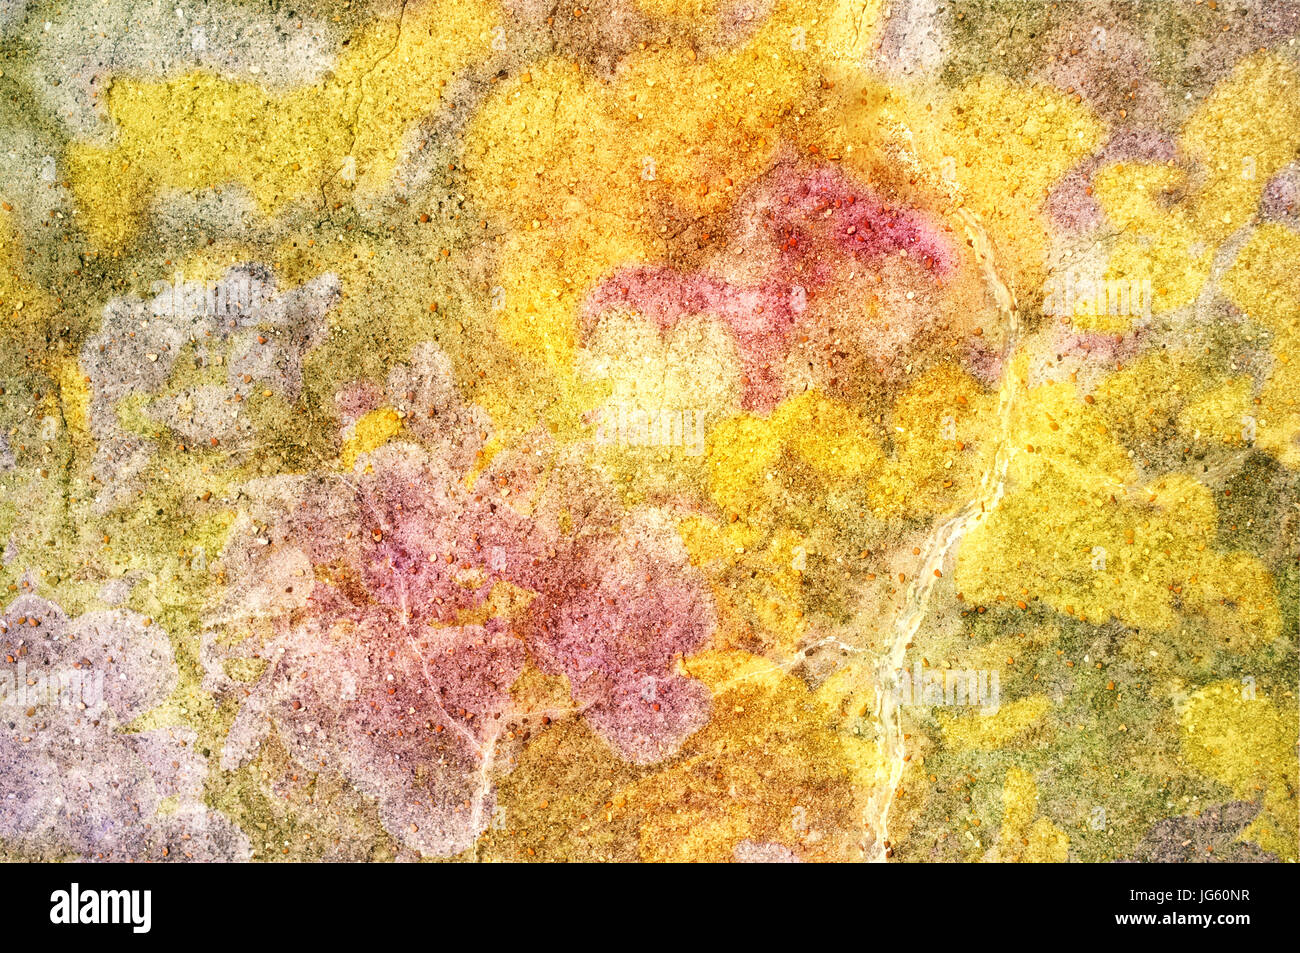 Abstrakte Hintergrundtextur aus einem Stück Stein, verstreut mit kleineren Steinen und überlagert mit leuchtend gelben, rosa und grünen Farbtönen. Stockfoto